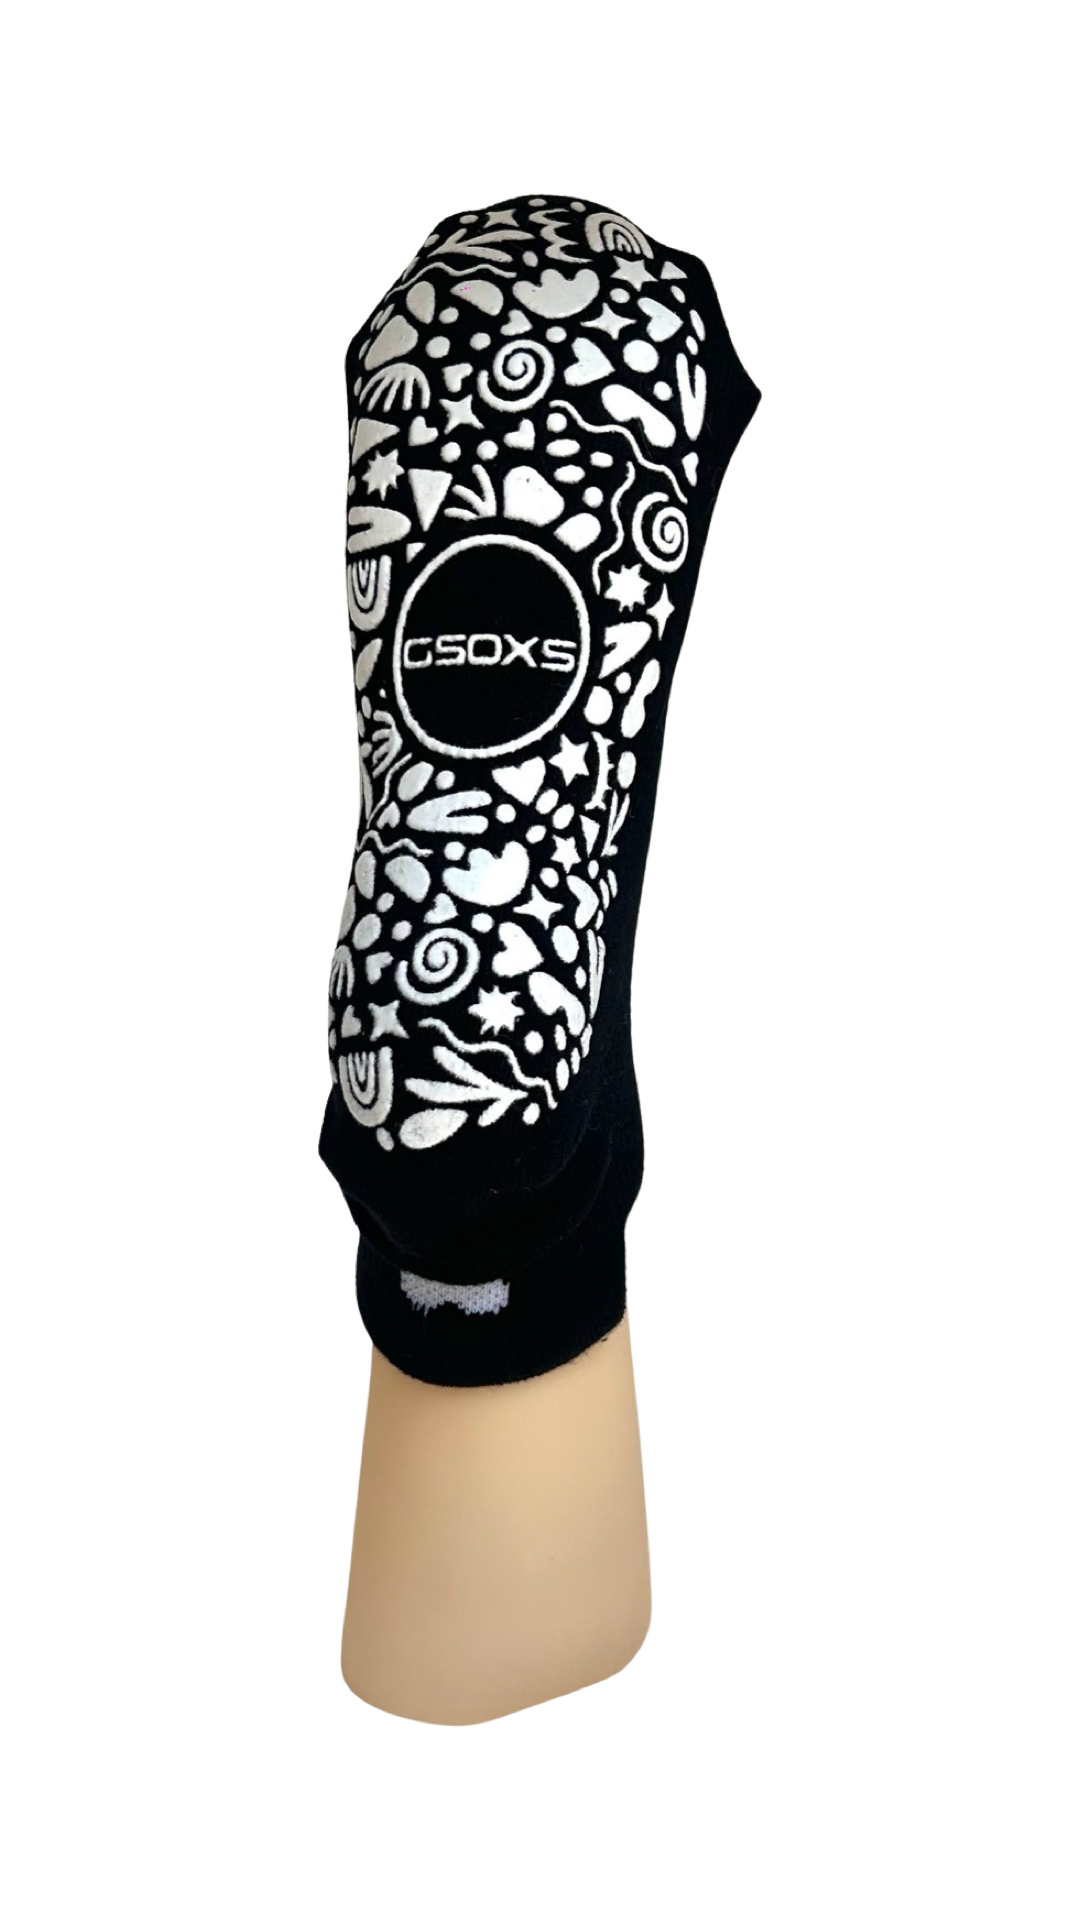 Black/White Grip Socks